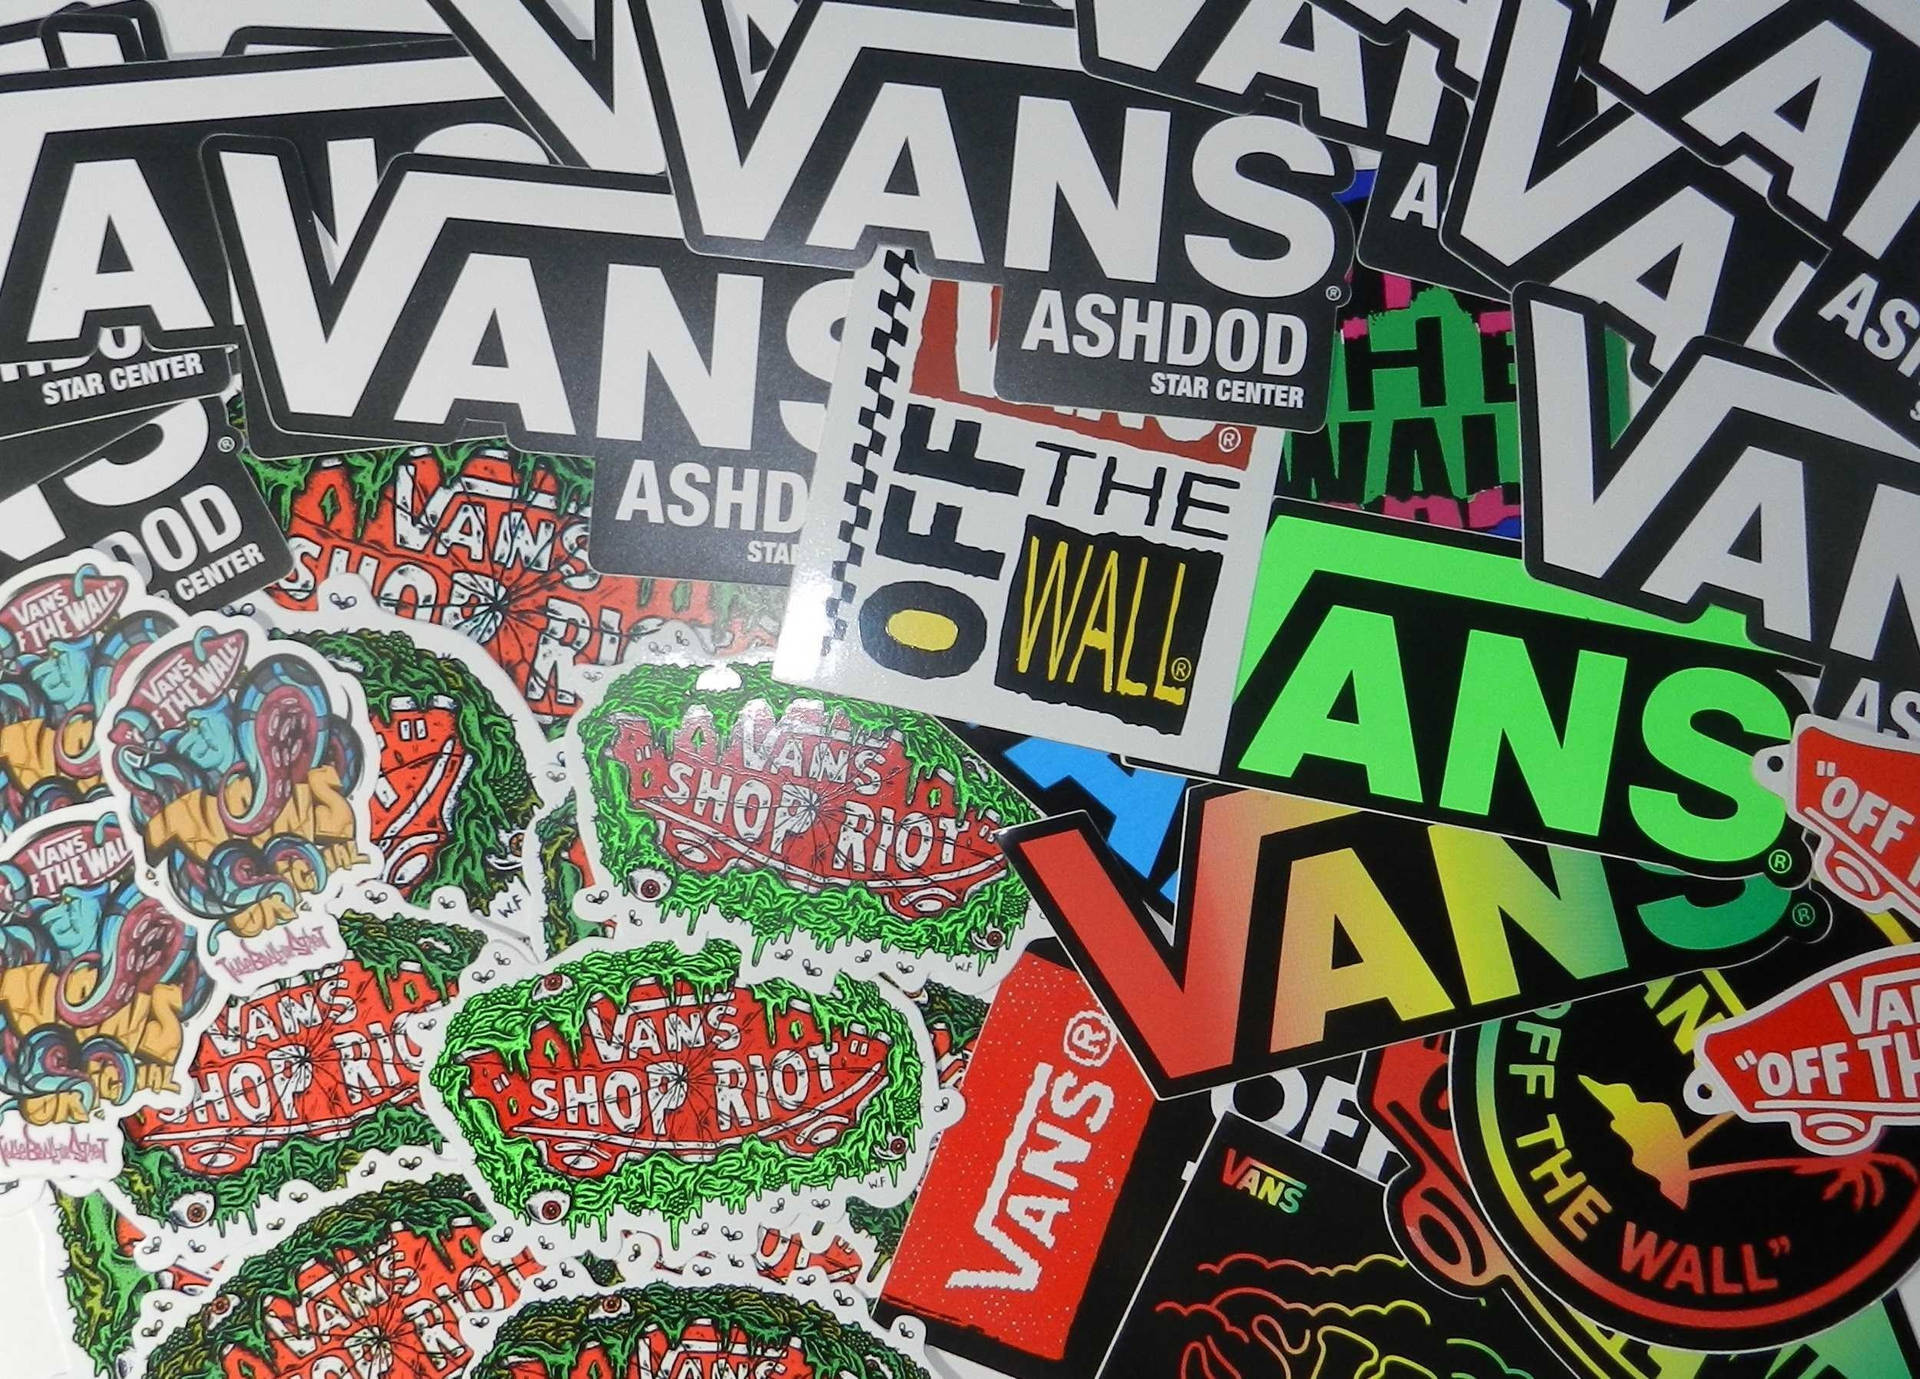 Wijzerplaat Het eens zijn met Shilling Download Vans Off The Wall Stickers Wallpaper | Wallpapers.com